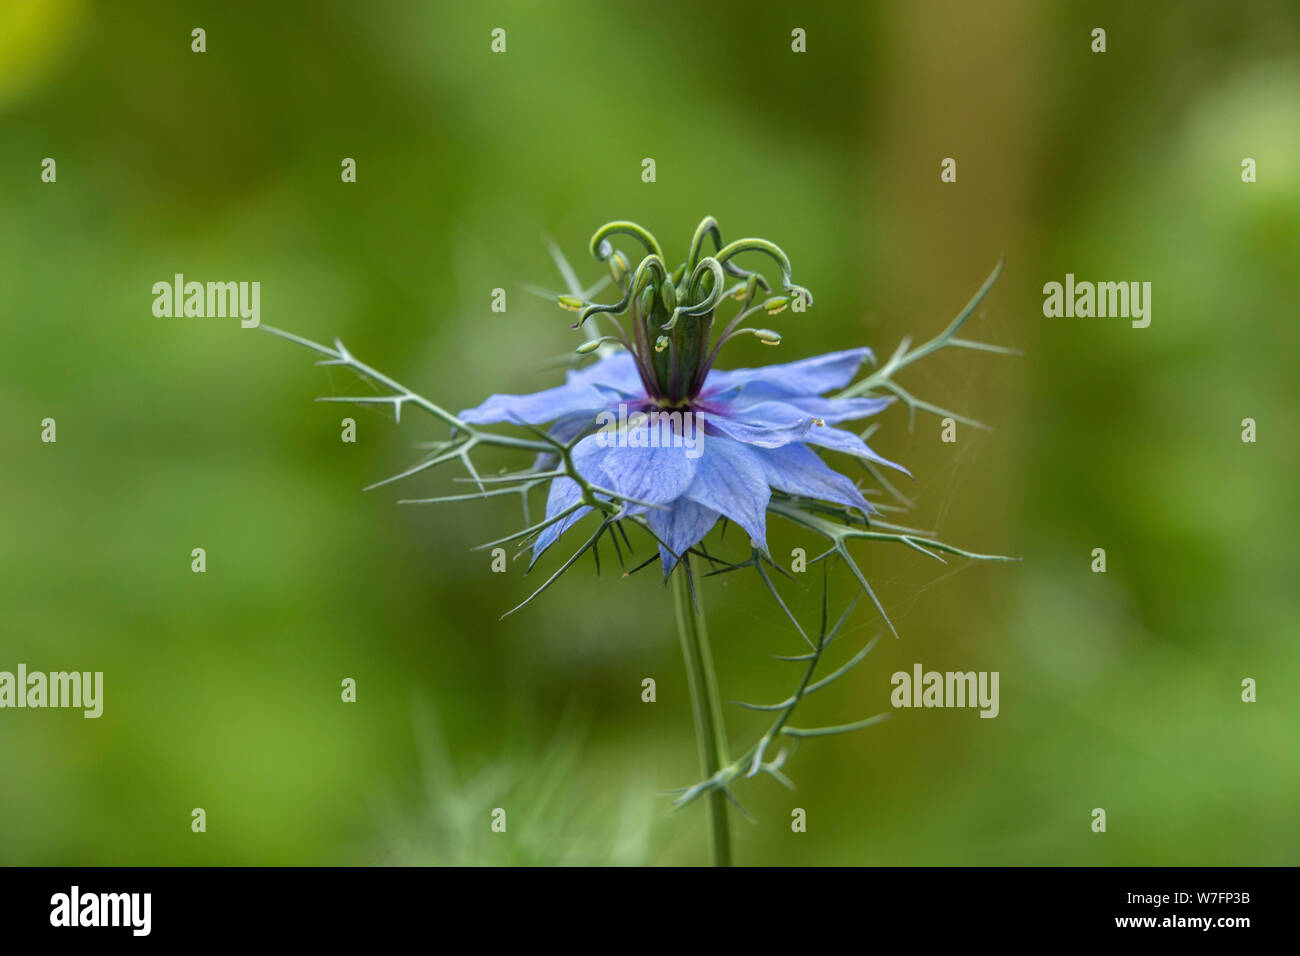 Nigella damascena 'Moody Blues', Love in a mist, blue garden flower Stock Photo